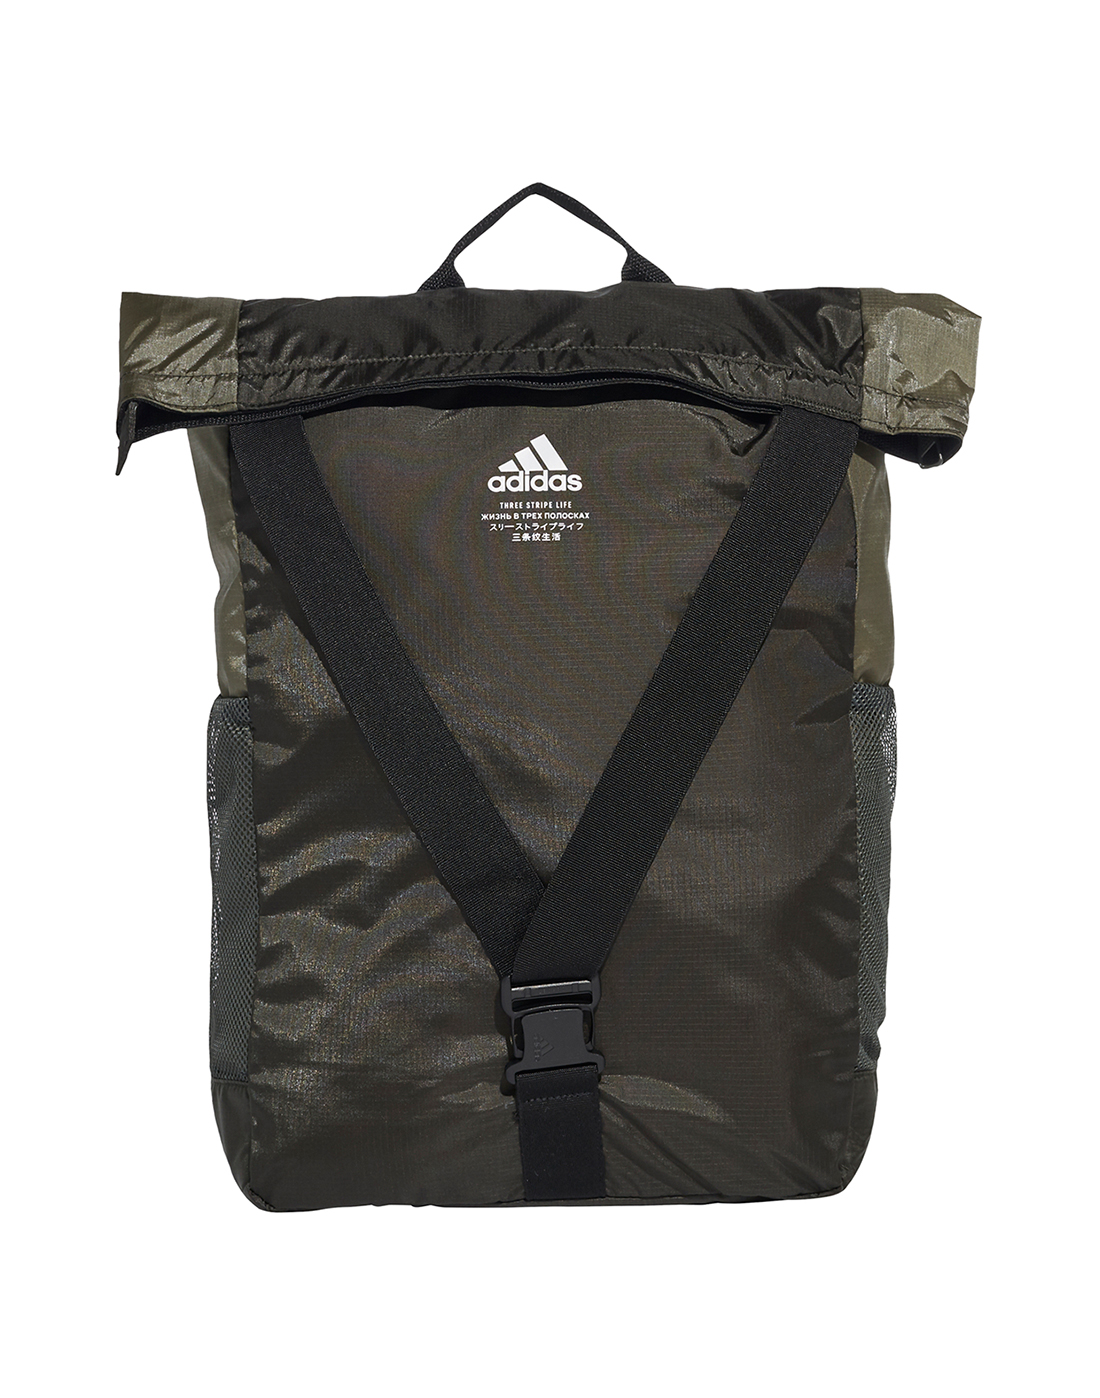 adidas folding backpack